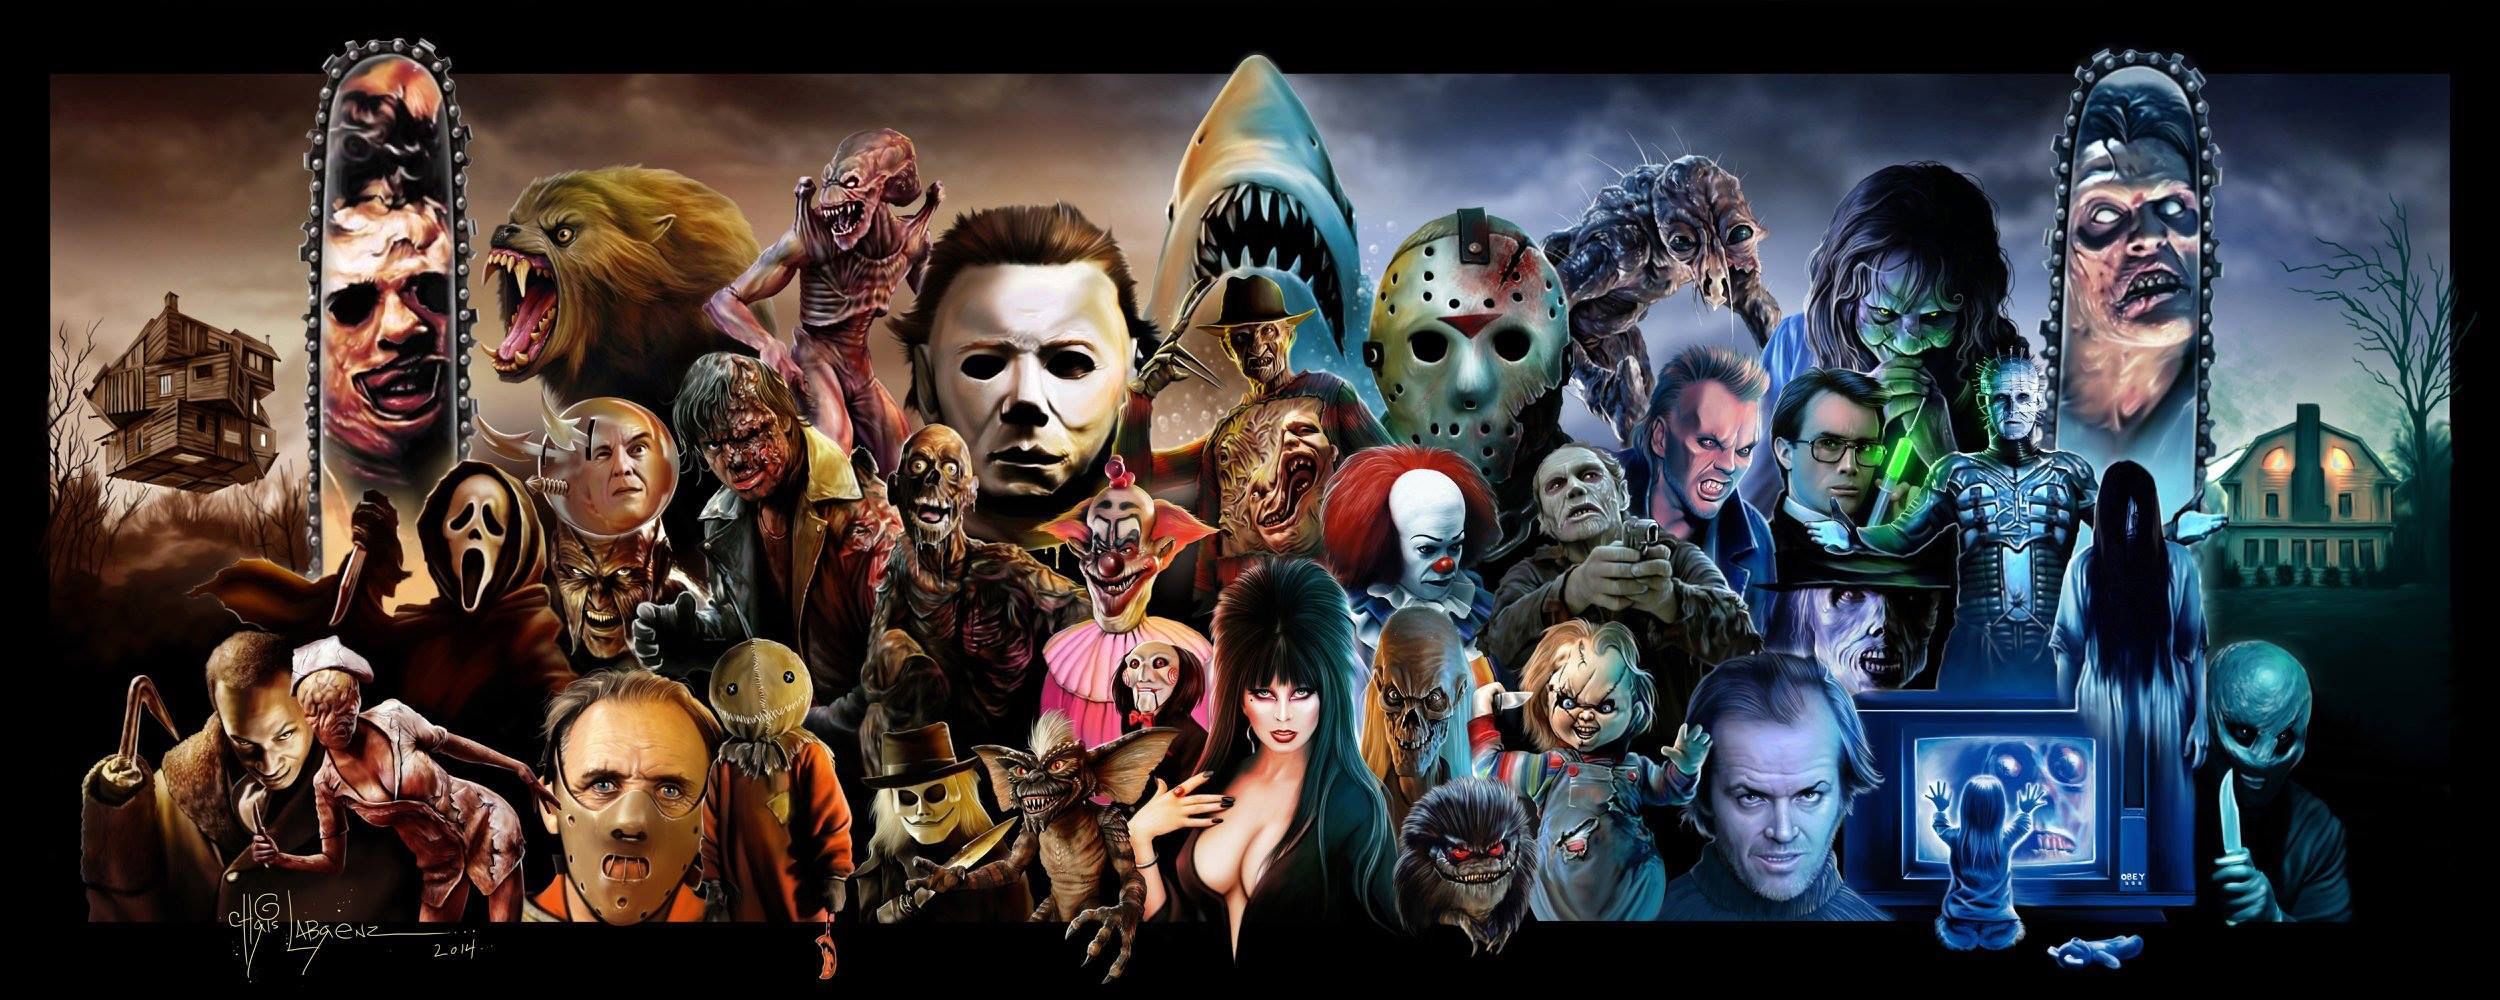 Horror characters desktop wallpapers